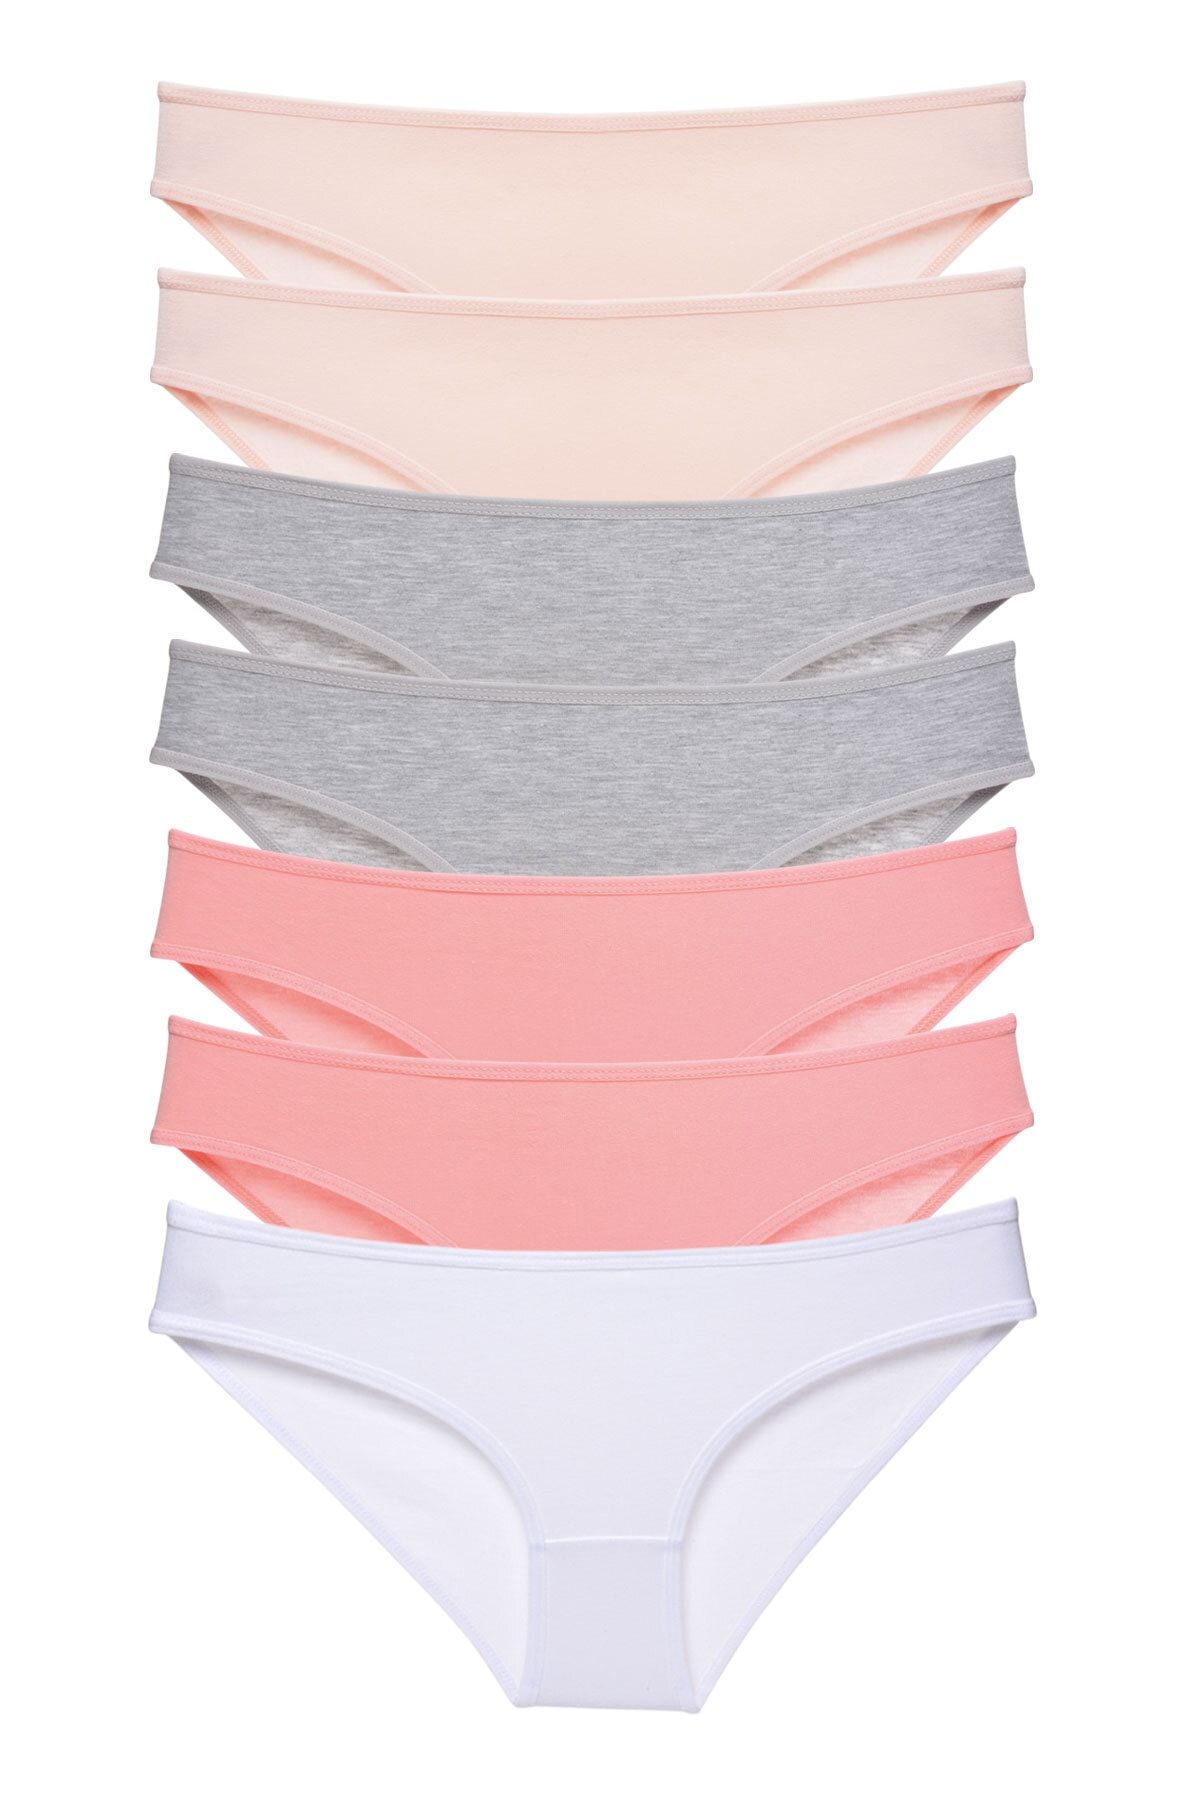 LadyMelex Kadın Soft Renkler 7'li Paket Bikini Külot